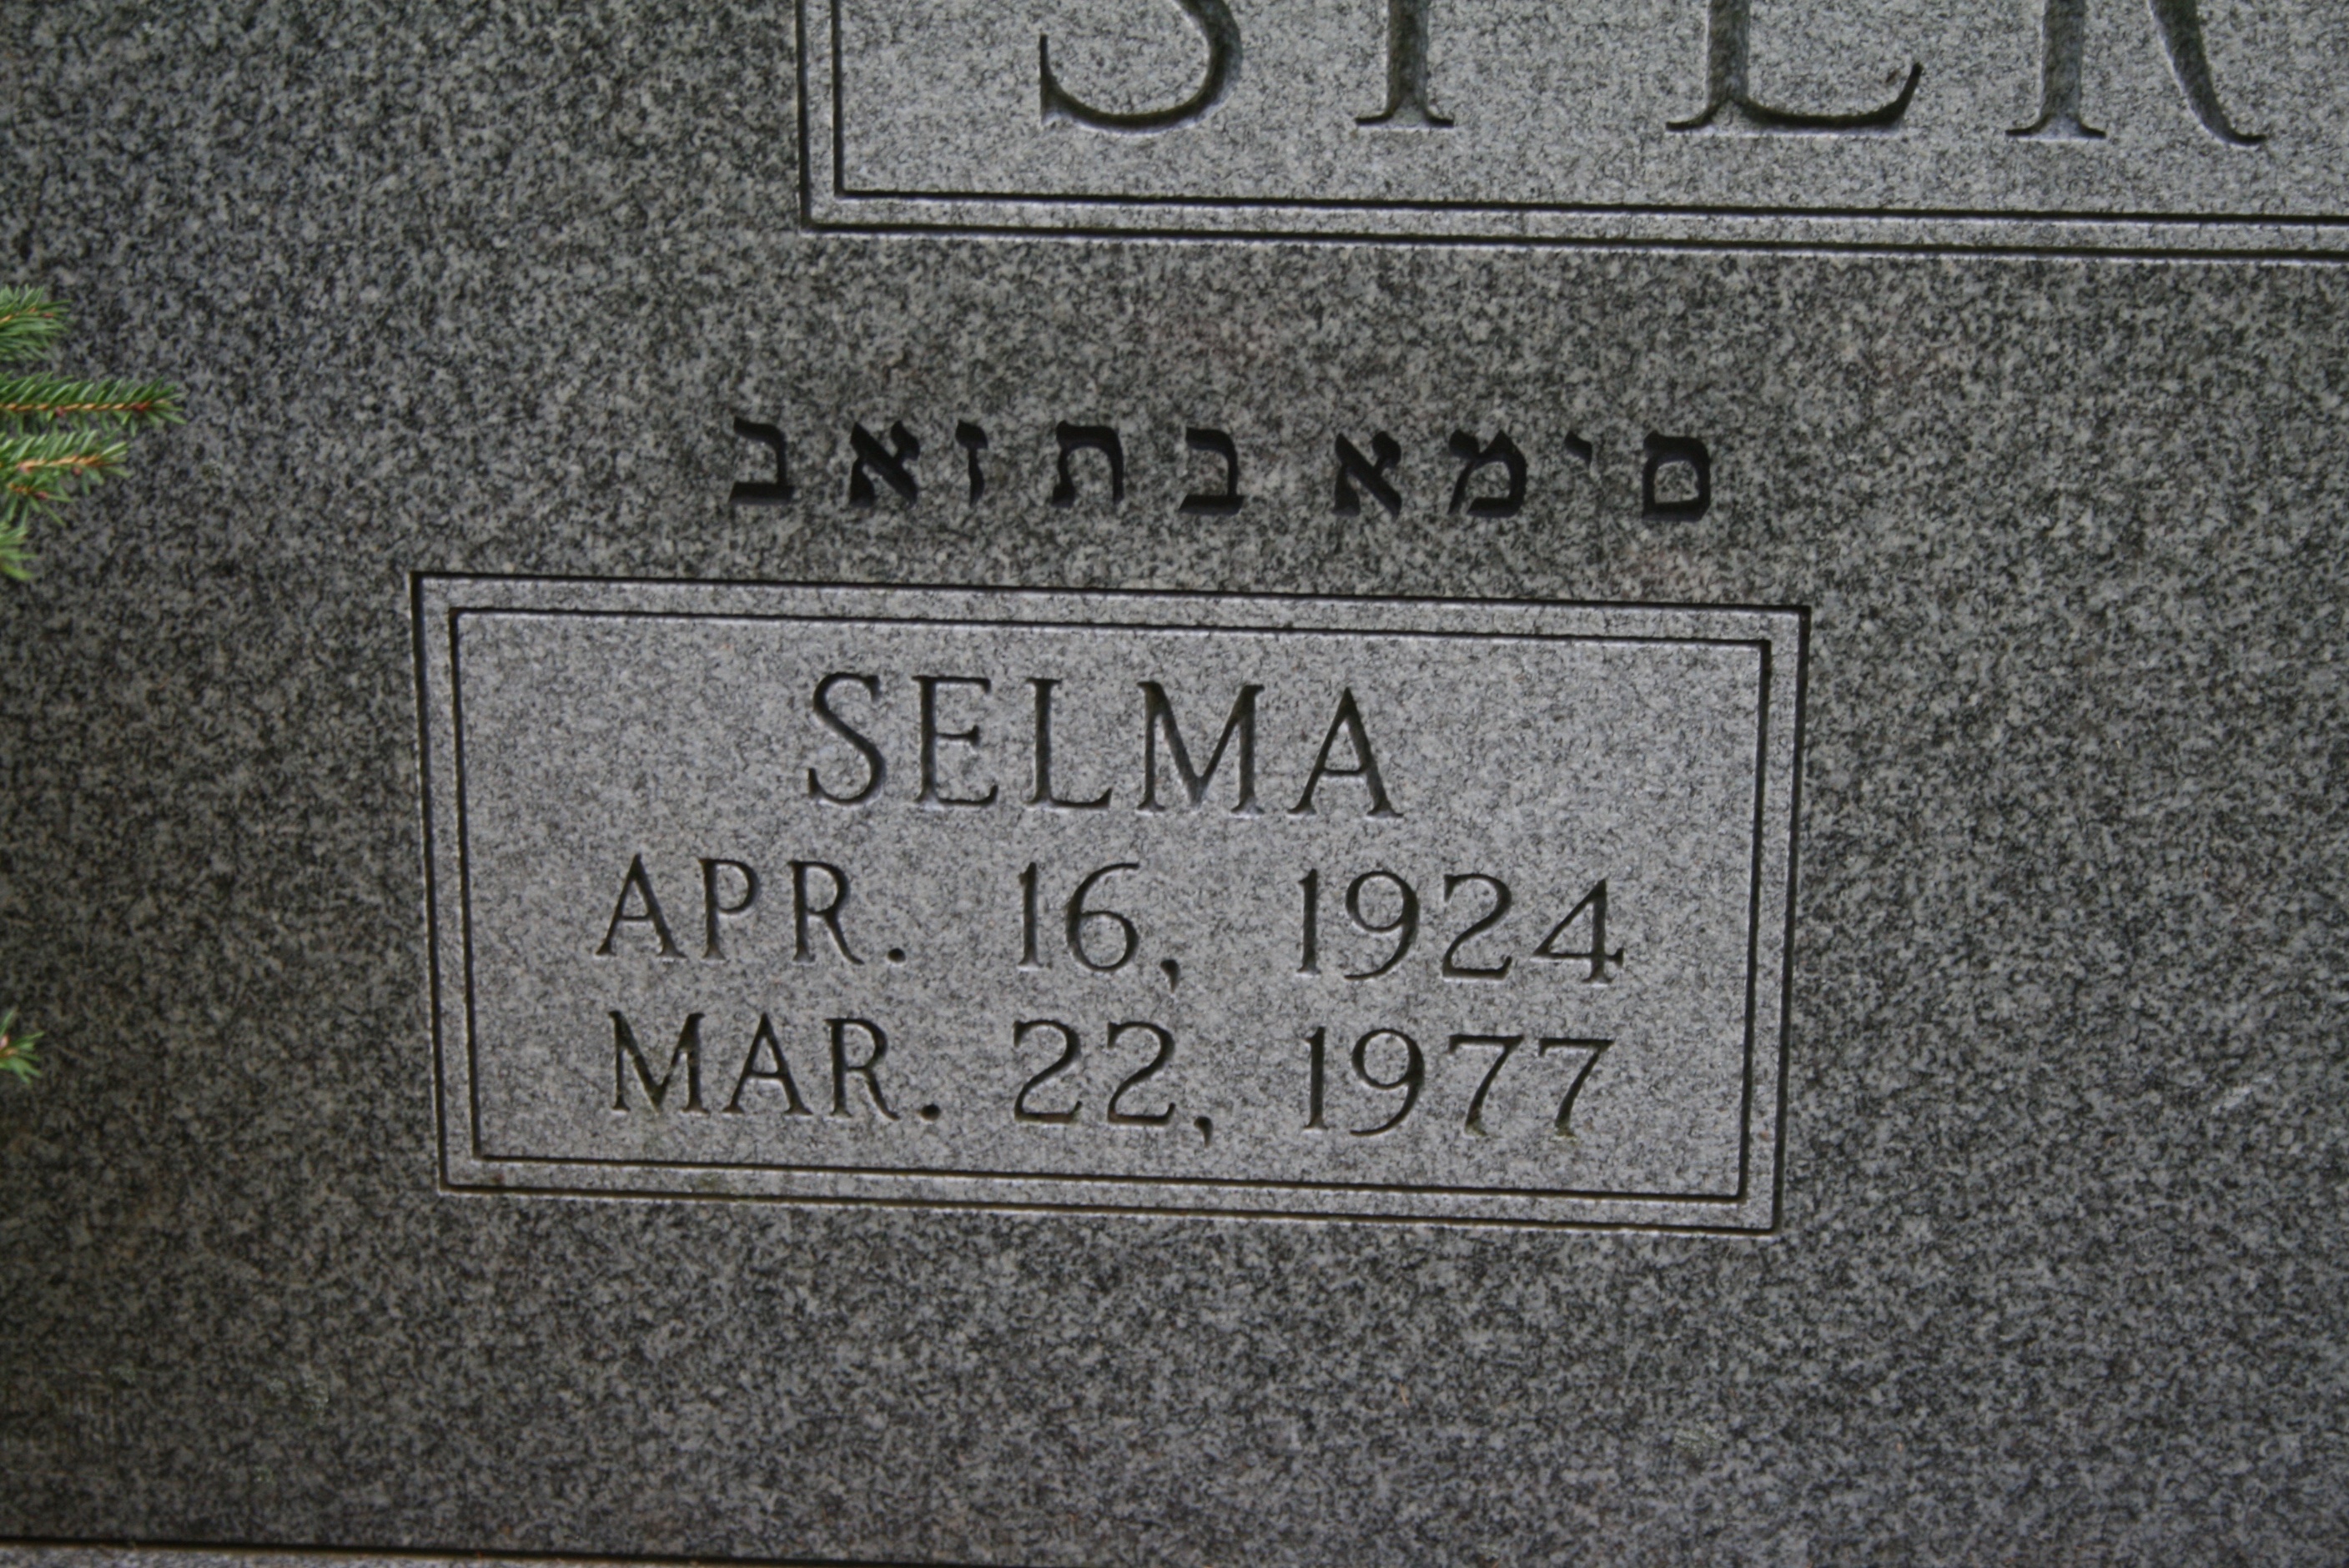 Sperling, Selma K.